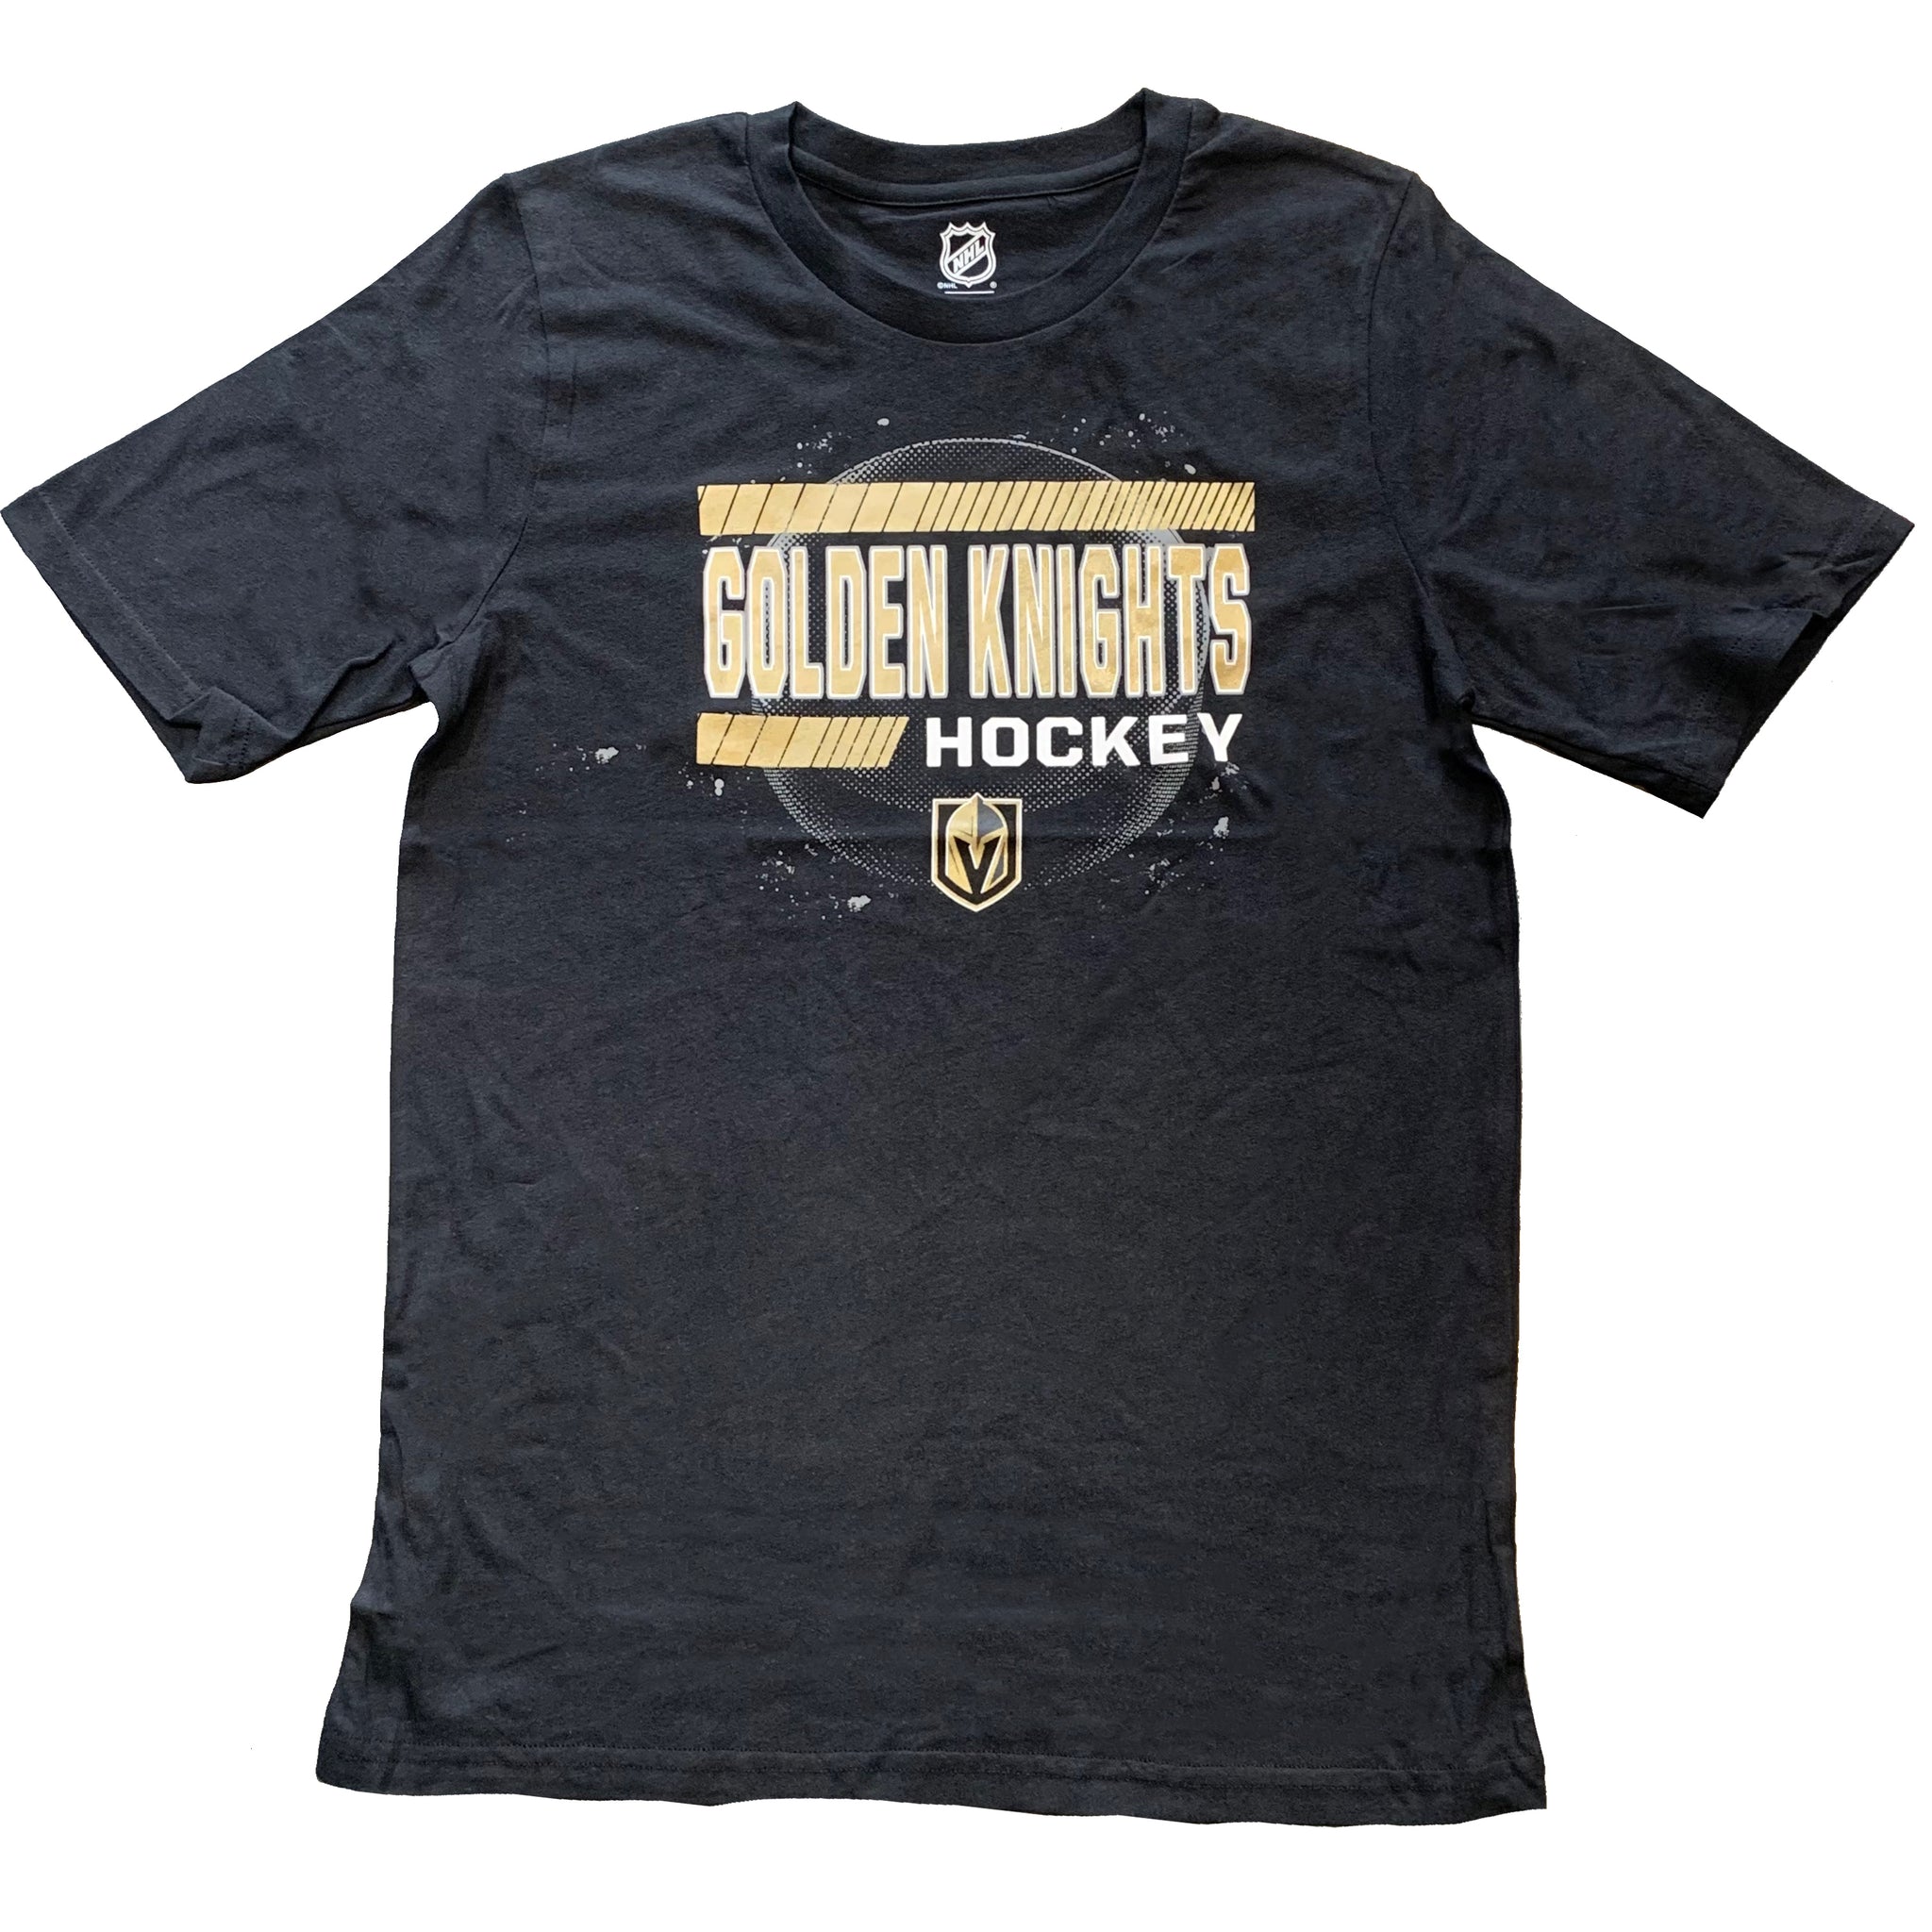 Golden Knights Youth The Zone Hockey Tshirt - Black